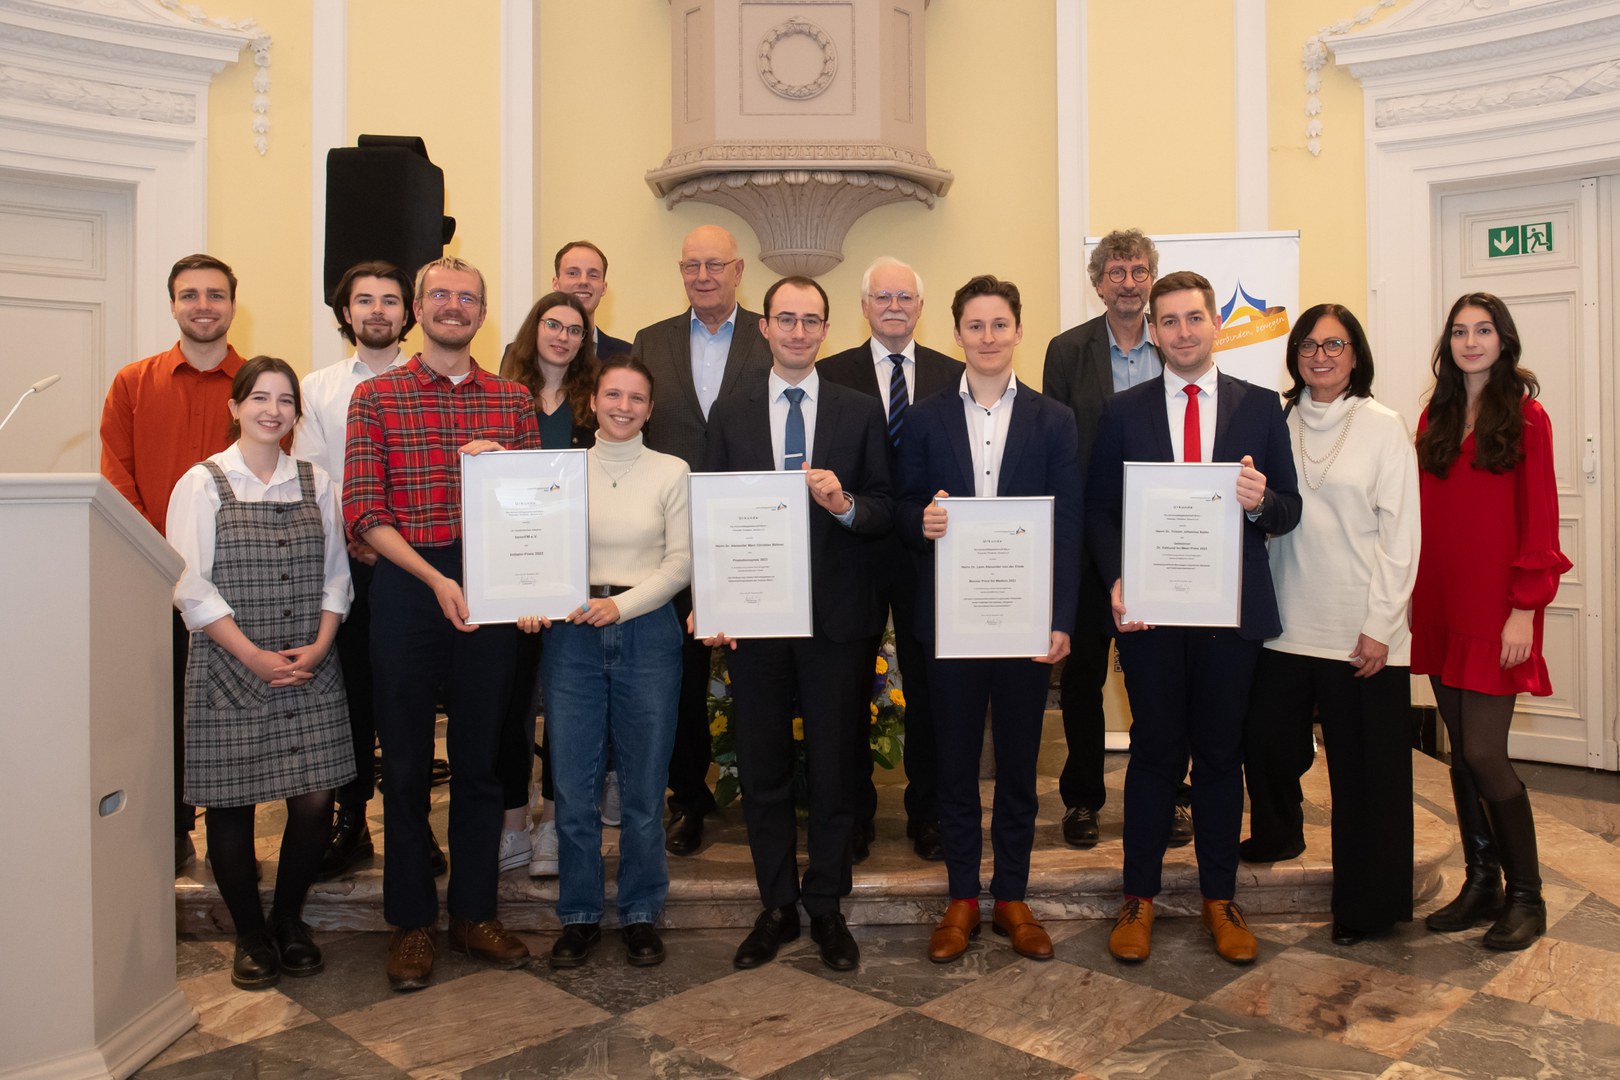 Die Universitätsgesellschaft Bonn hat herausragende Dissertationen und studentisches Engagement geehrt - - die Ausgezeichneten mit Mitgliedern des UGB-Vorstands sowie Betreuerinnen und Betreuern der ausgezeichneten Arbeiten.